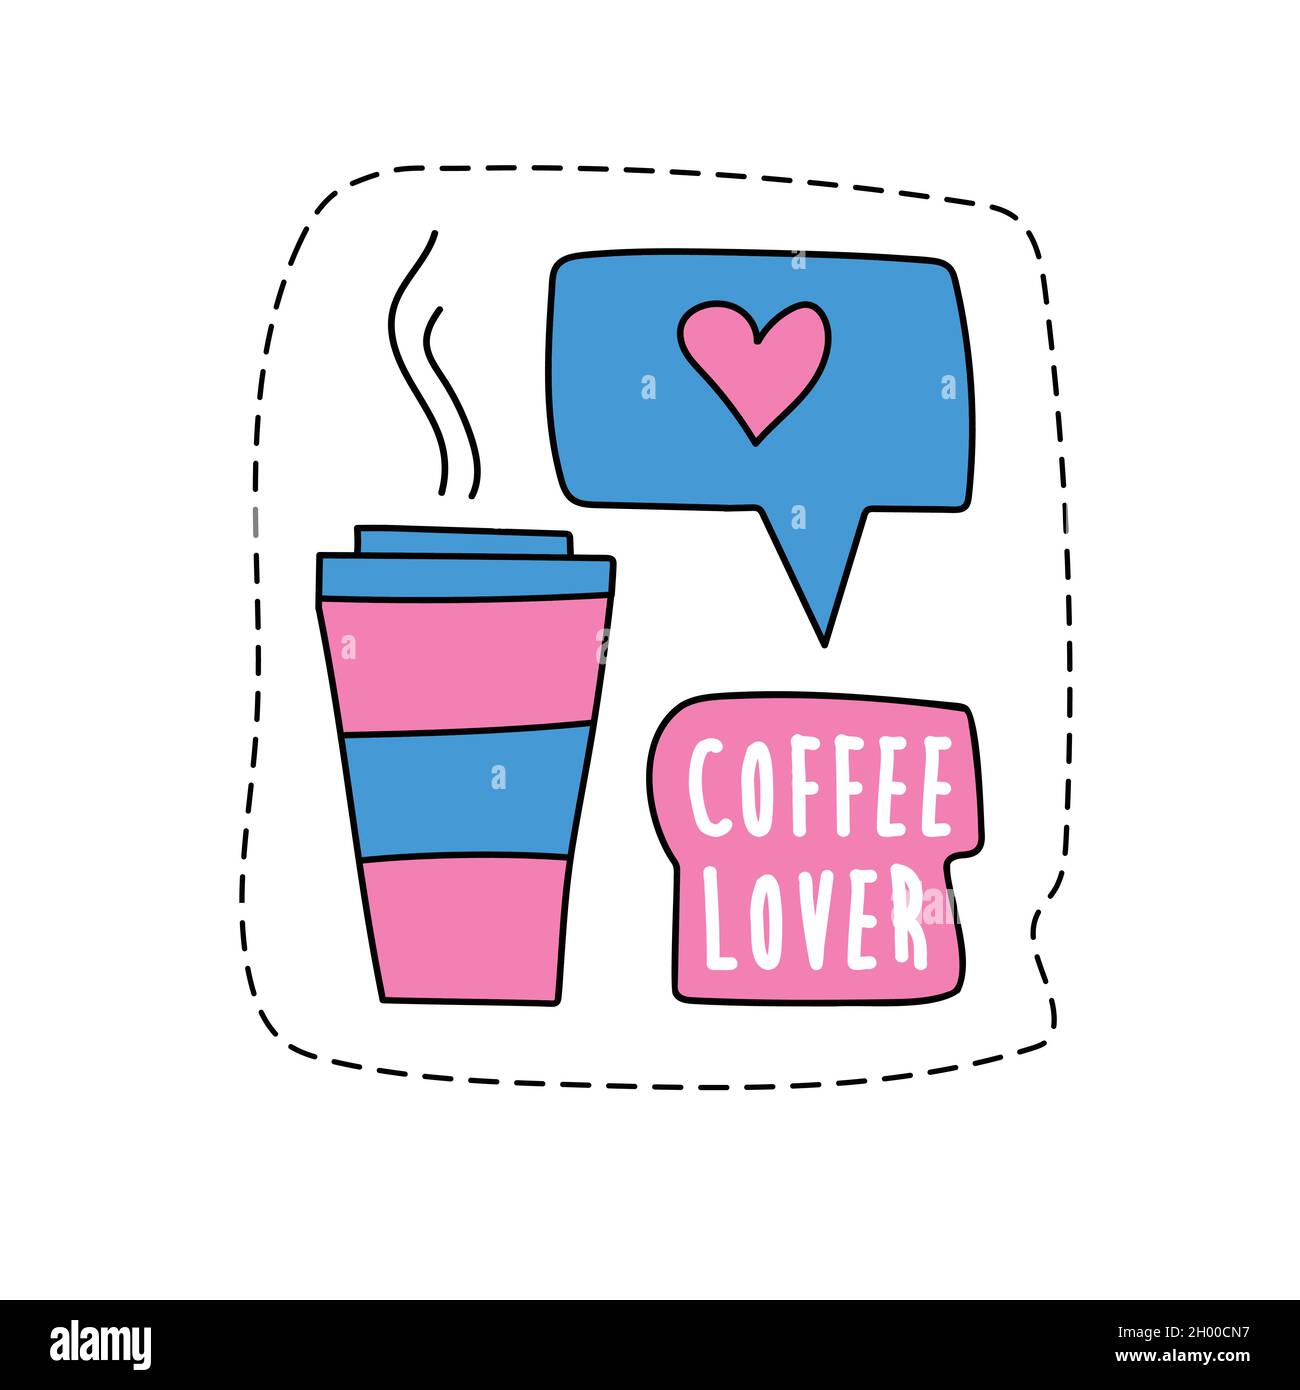 Un sticker moderne - café à emporter.Tasse de café et signe similaire.Autocollant « Coffee lover » pour un motif rose et bleu Illustration de Vecteur